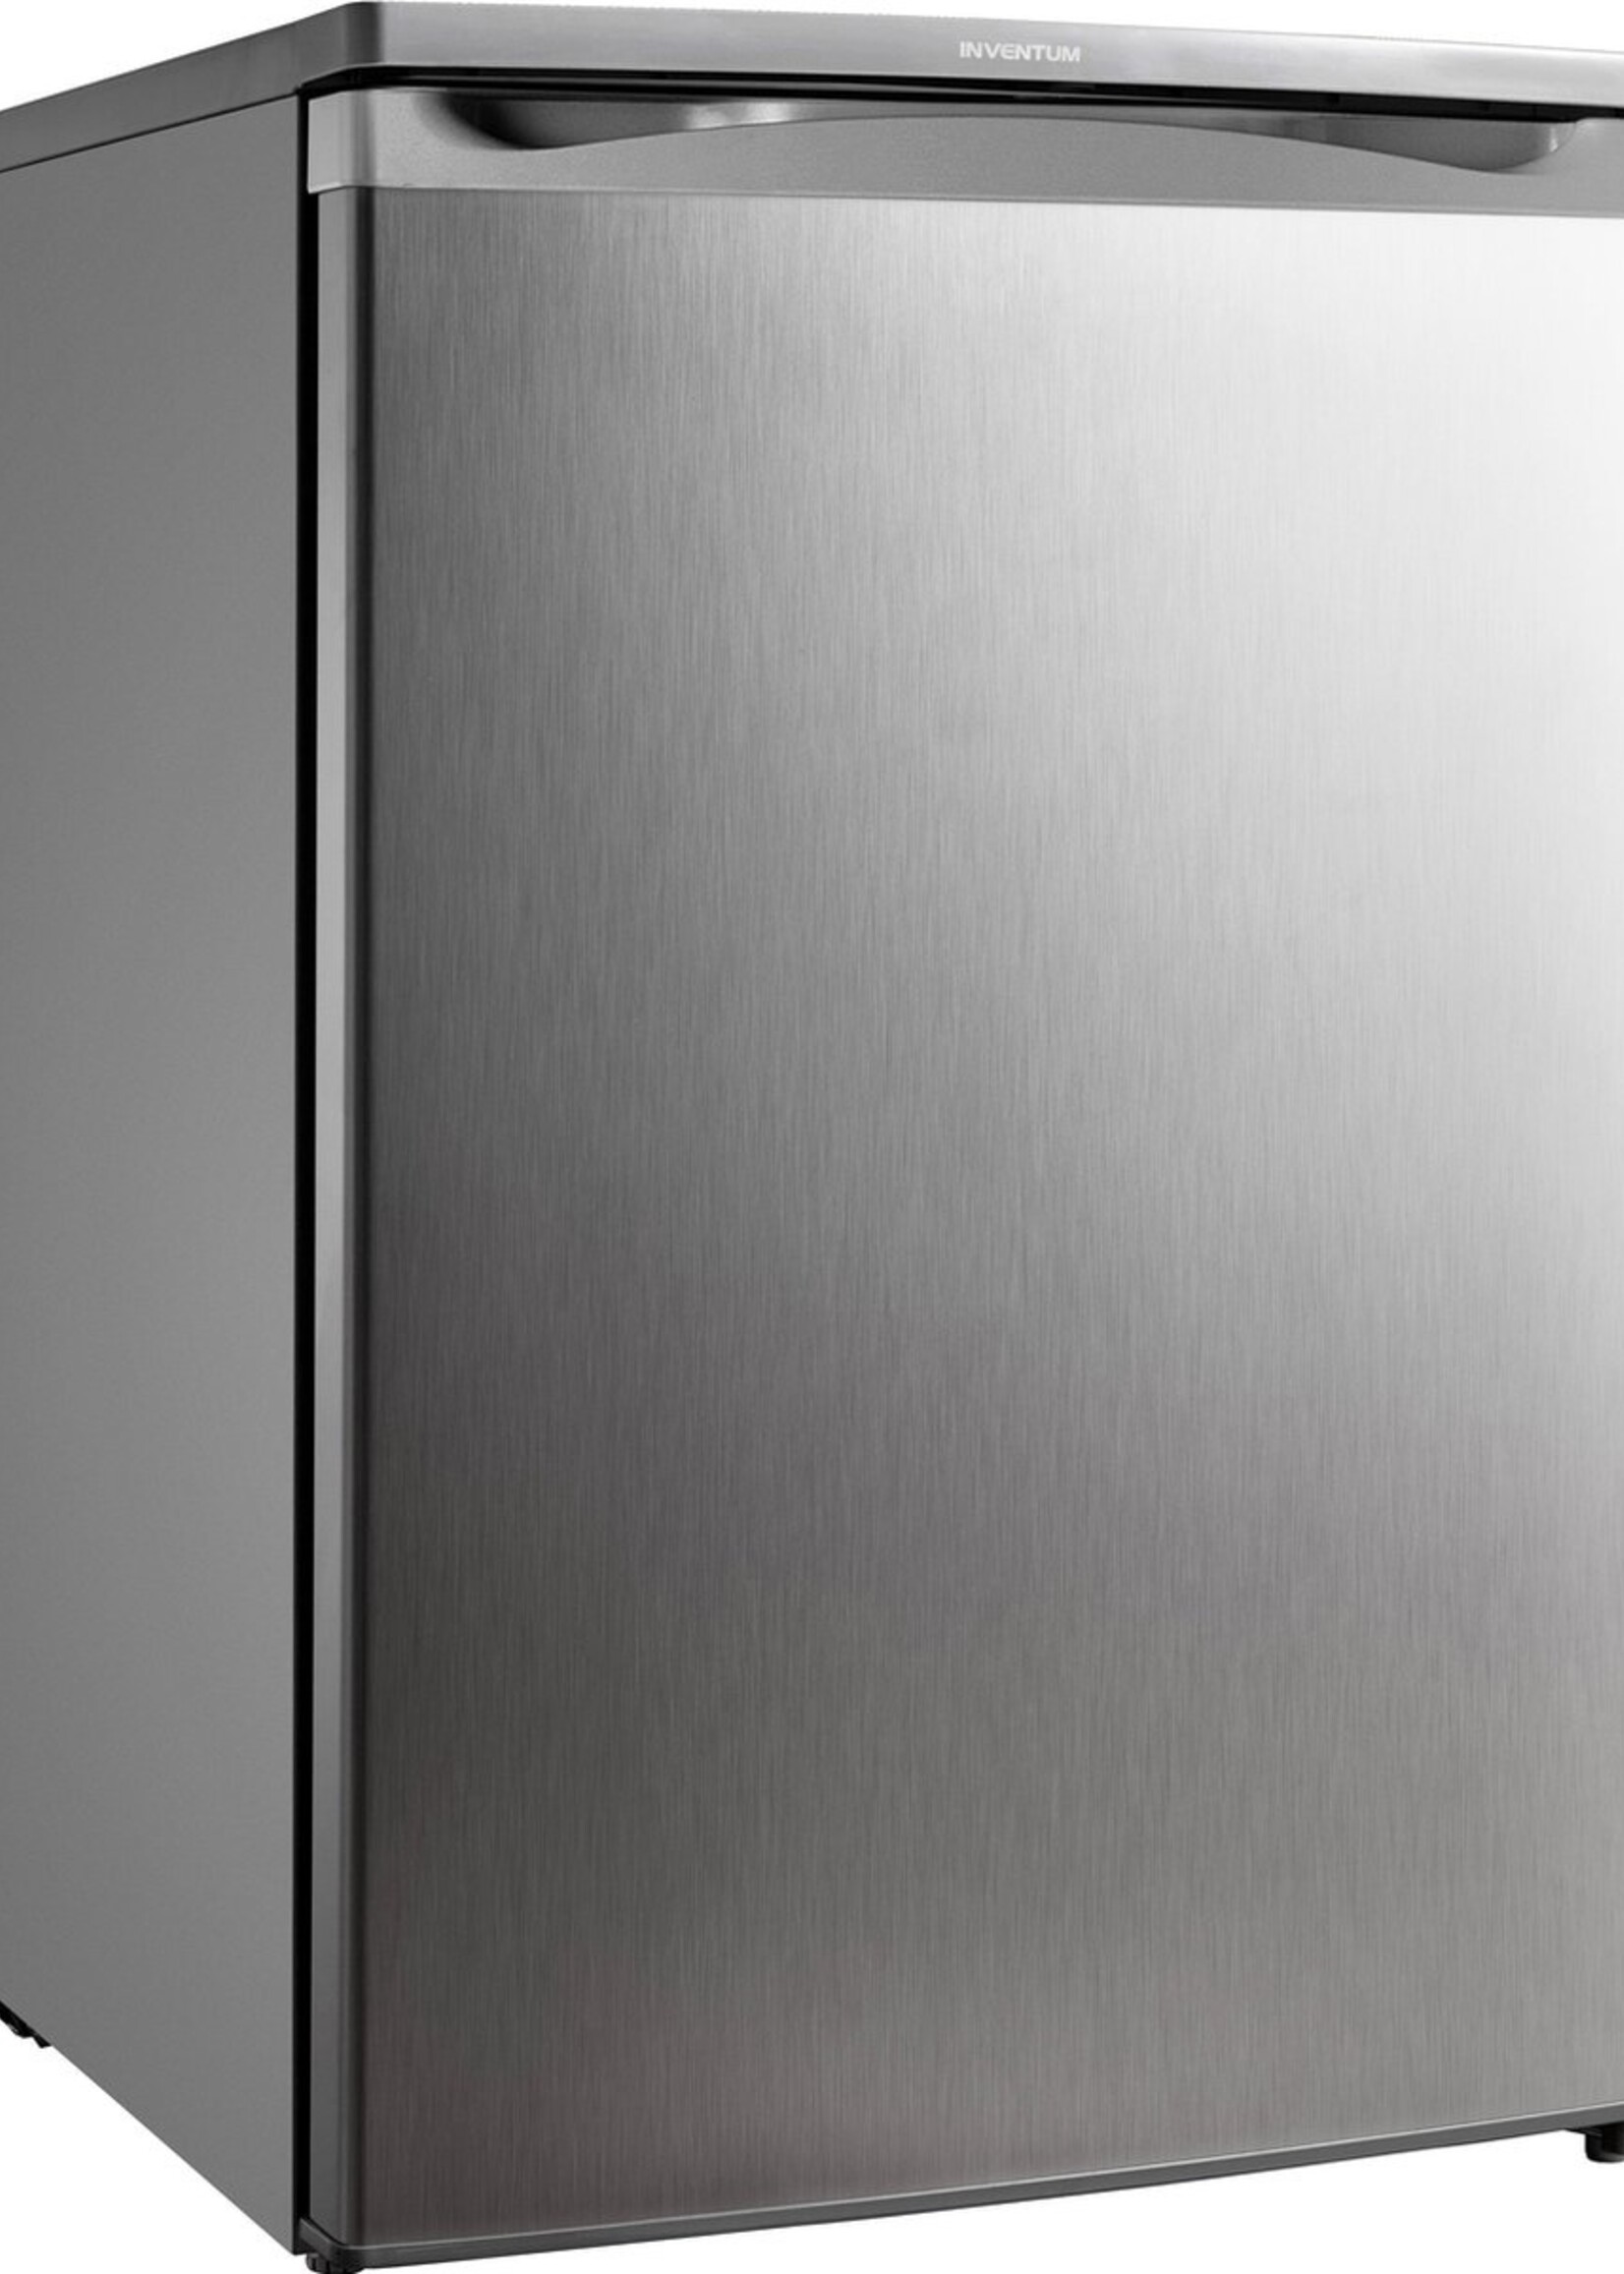 Inventum KK055R - Tafelmodel koelkast